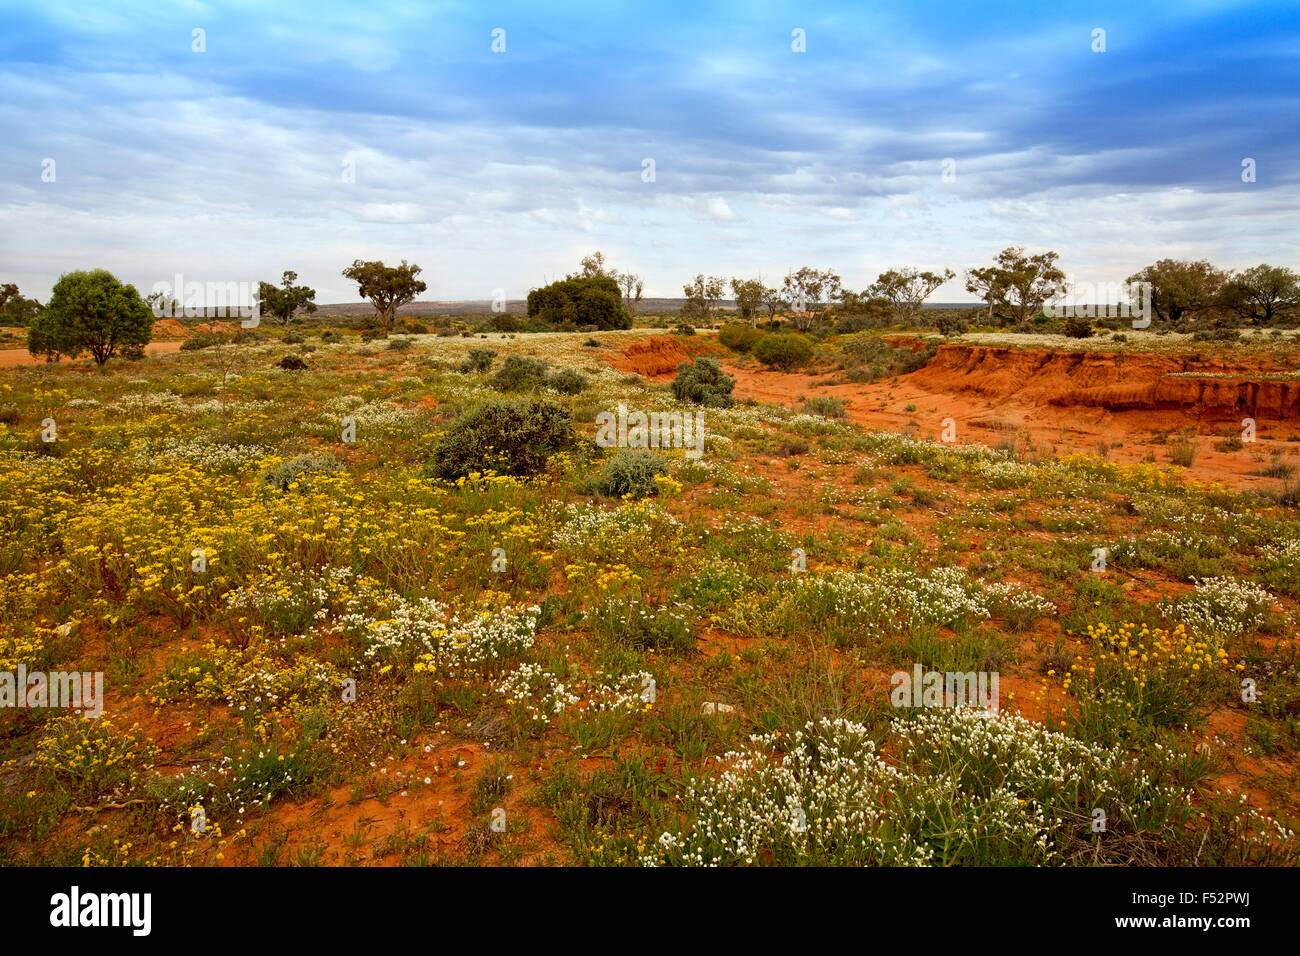 Farbenfrohe australische Outback-Landschaft mit weiten rote Ebenen unter blauem Himmel übersät mit gelben & weißen Wildblumen nach Regen Stockfoto